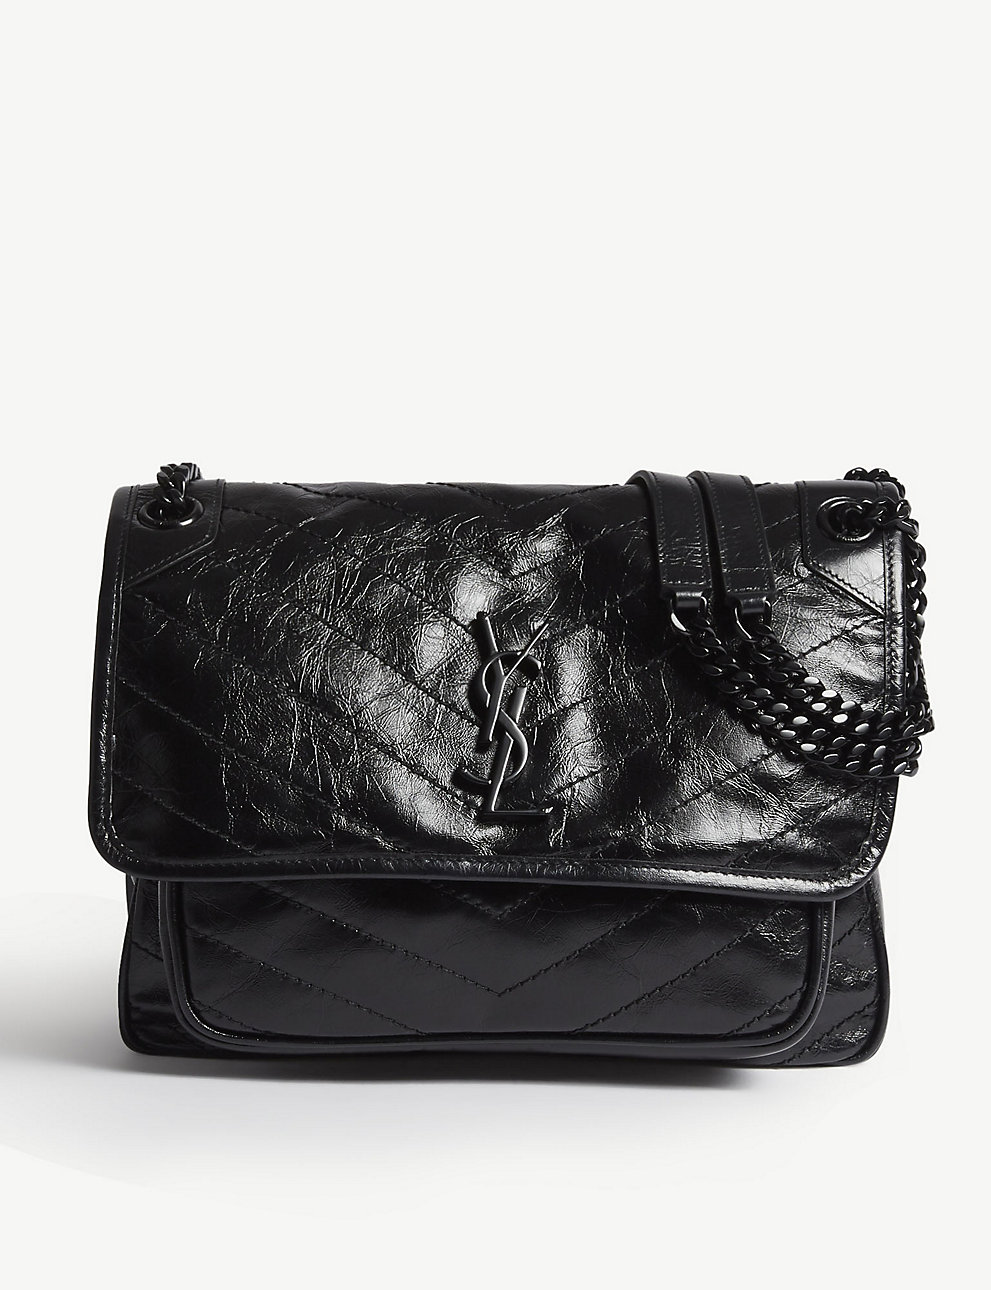 Niki Saint Laurent Bag in Medium